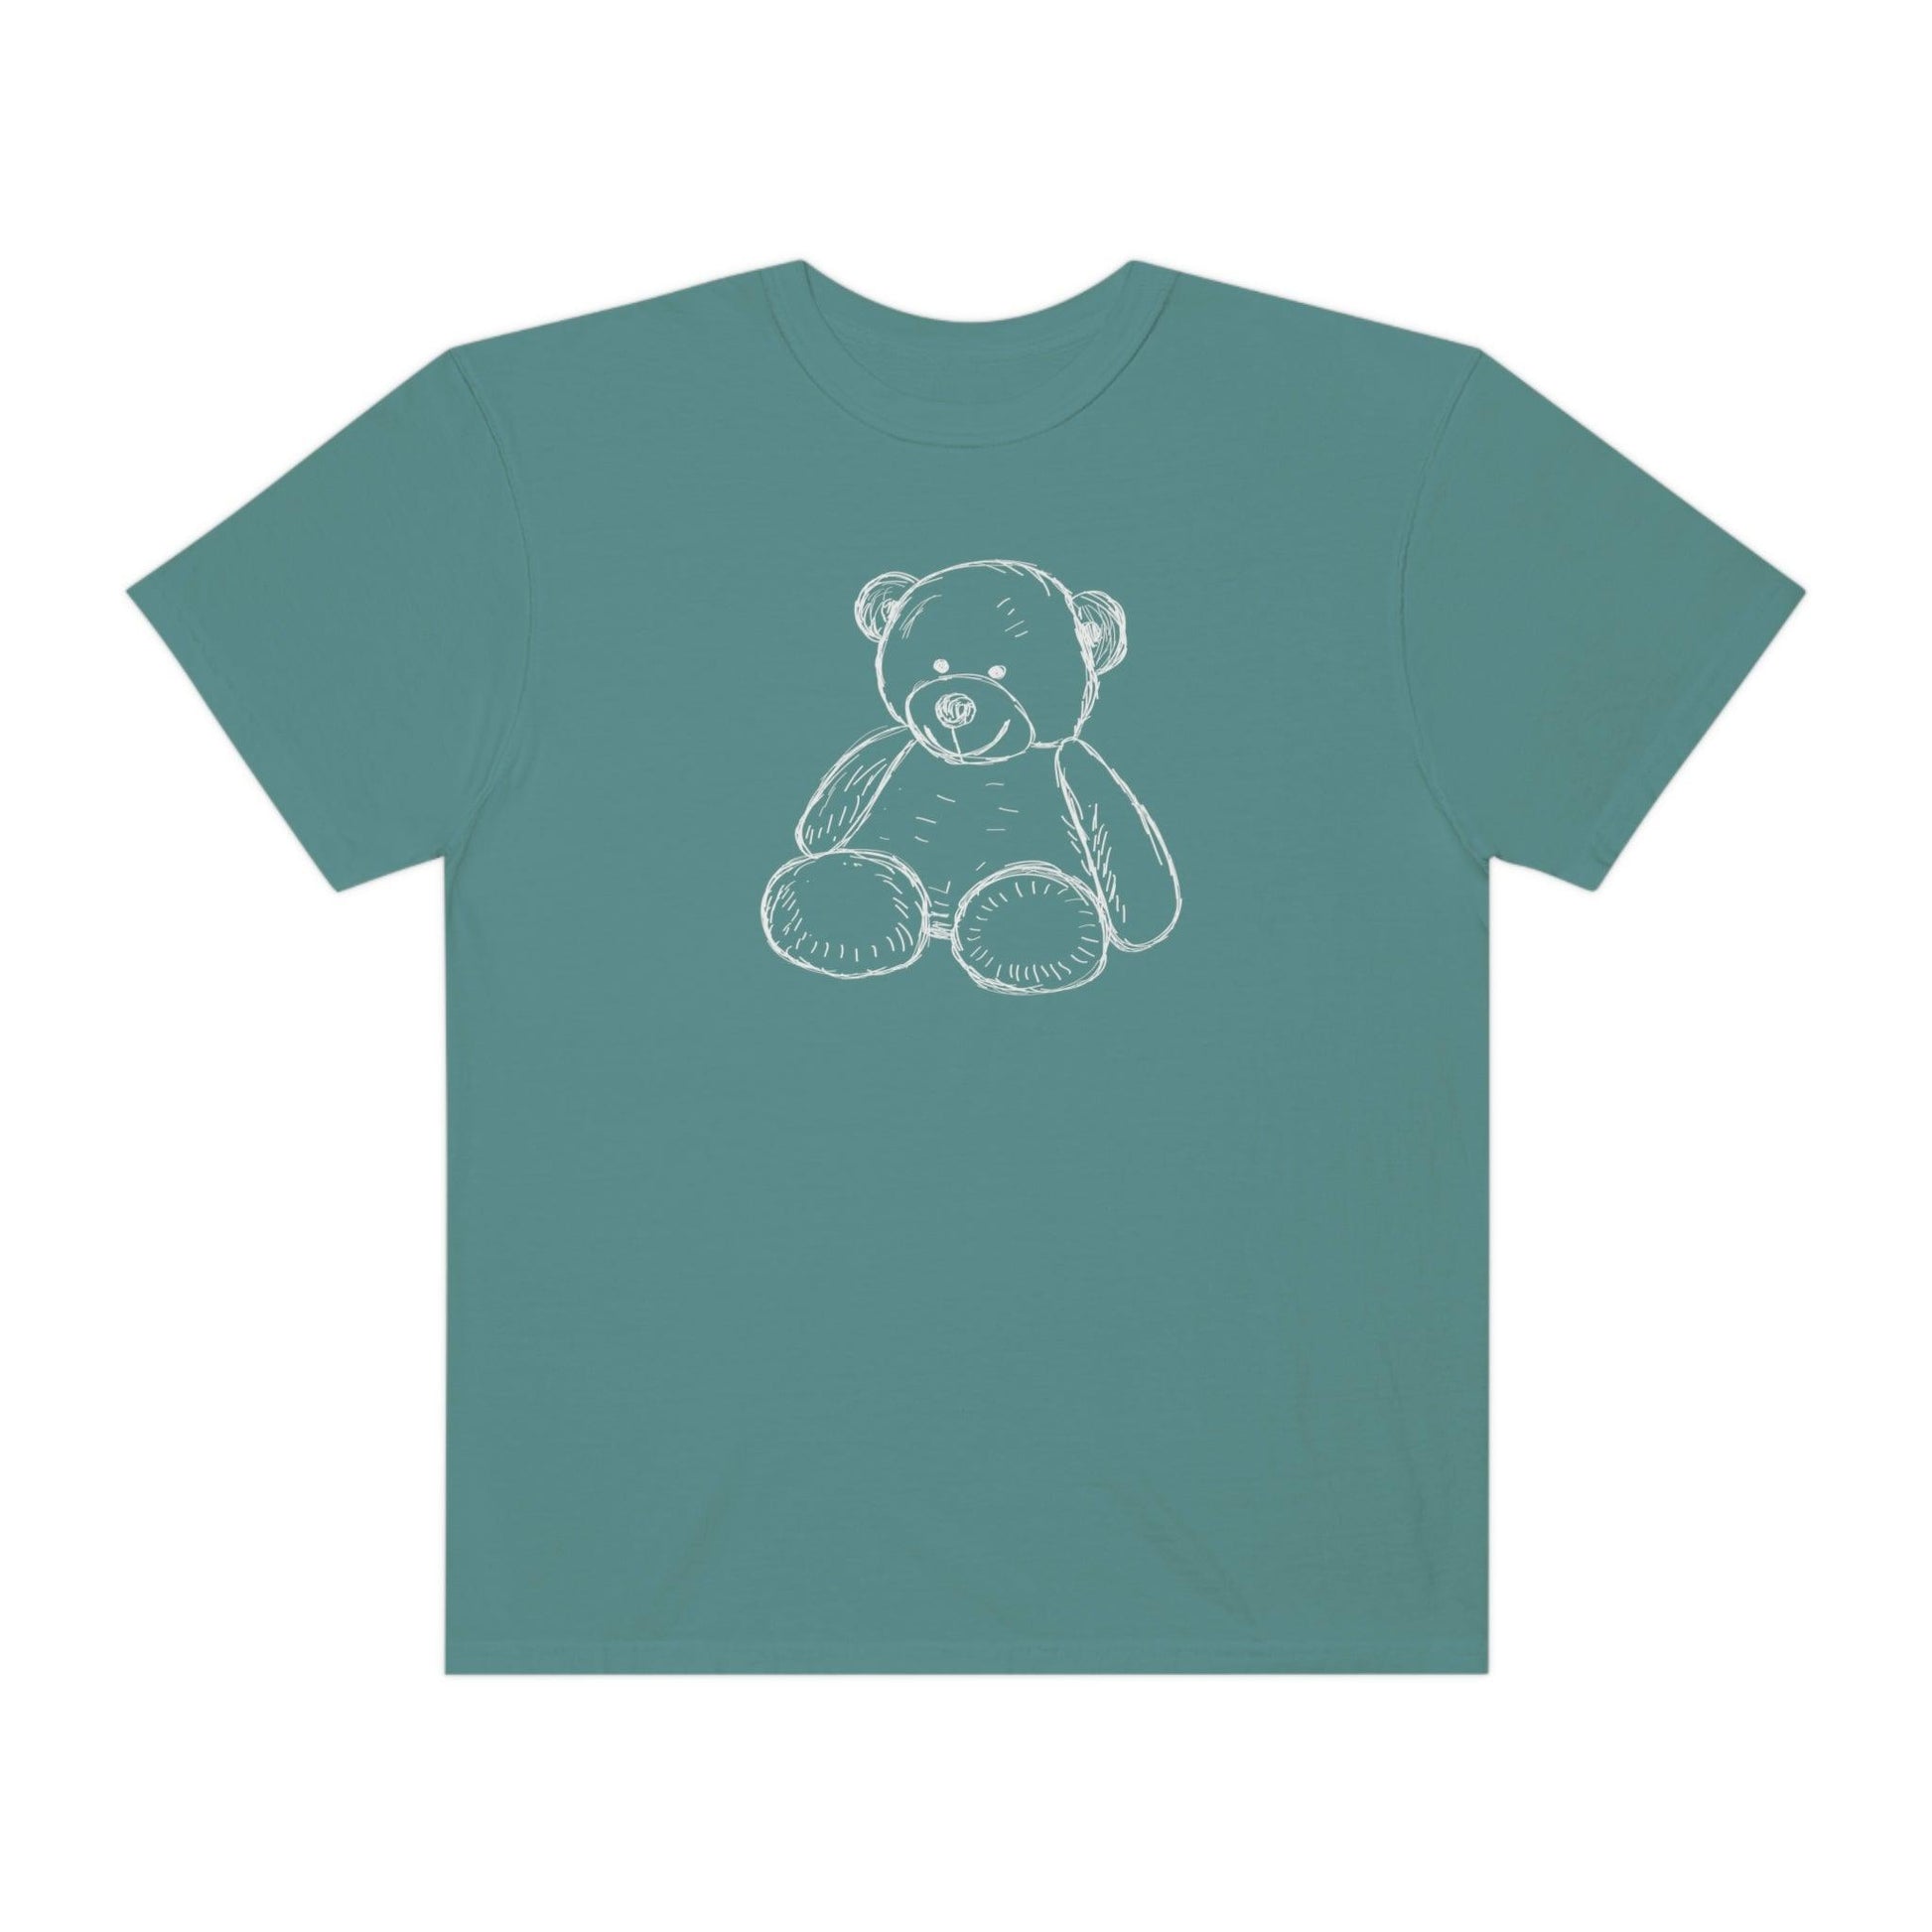 Teddy Bear Comfort Colors T-Shirt - BentleyBlueCo